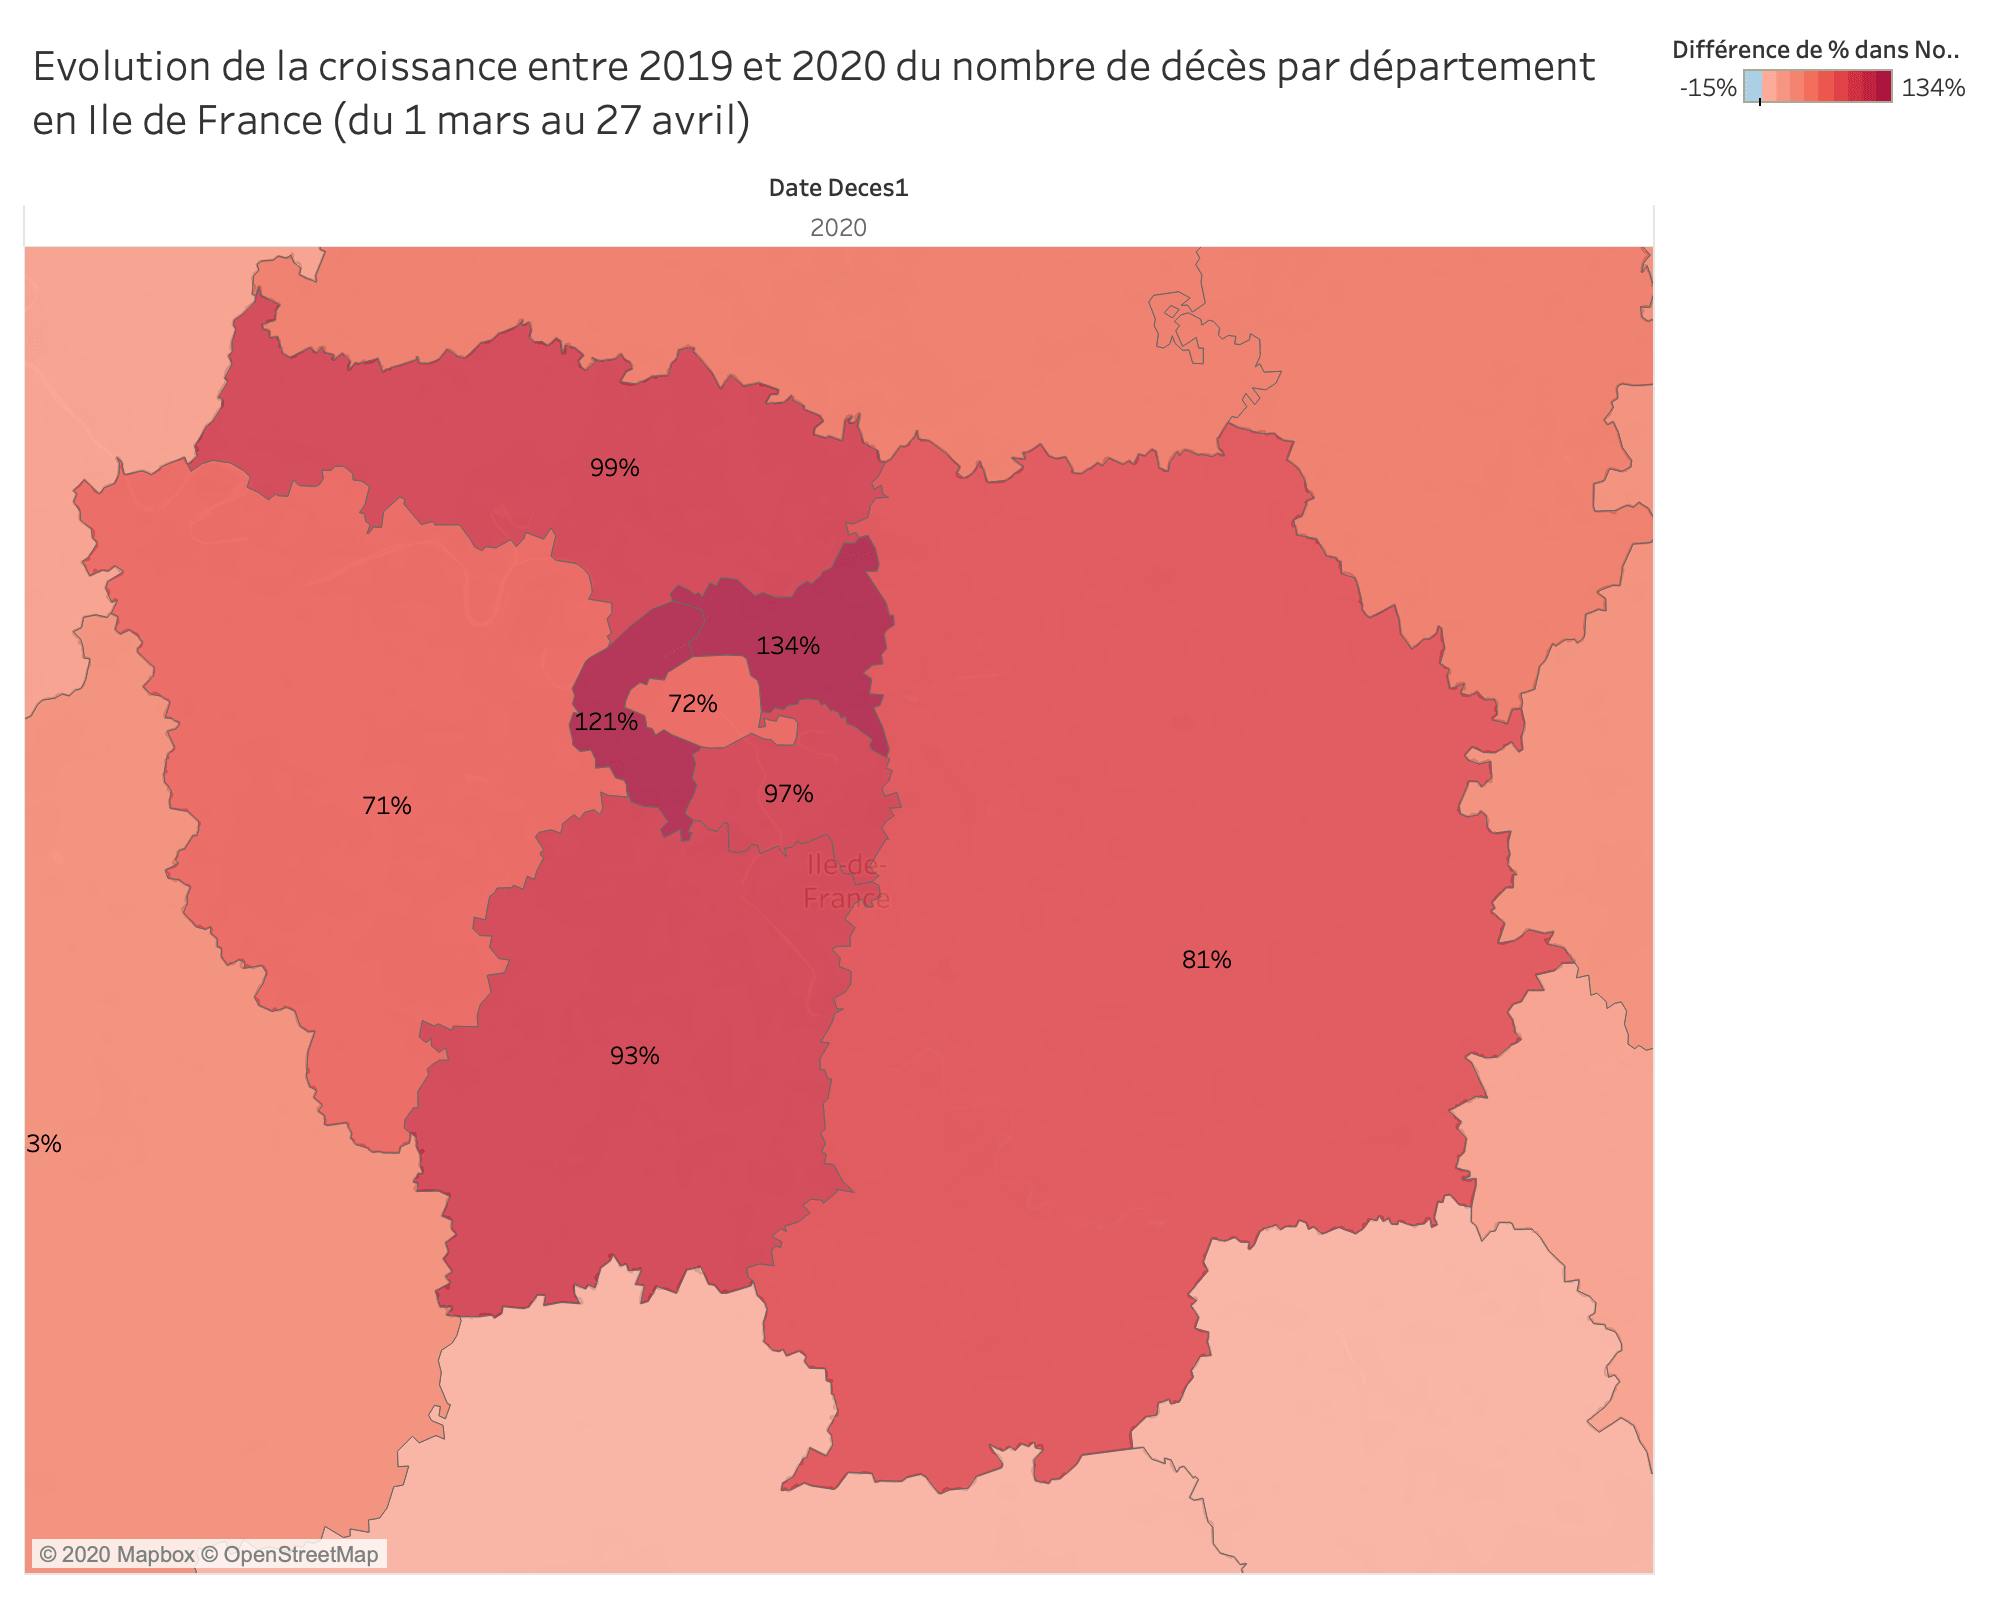 Evolution de la croissance entre 2019 et 2020 du nombre de décès par département en Ile de France (du 1 mars au 27 avril)